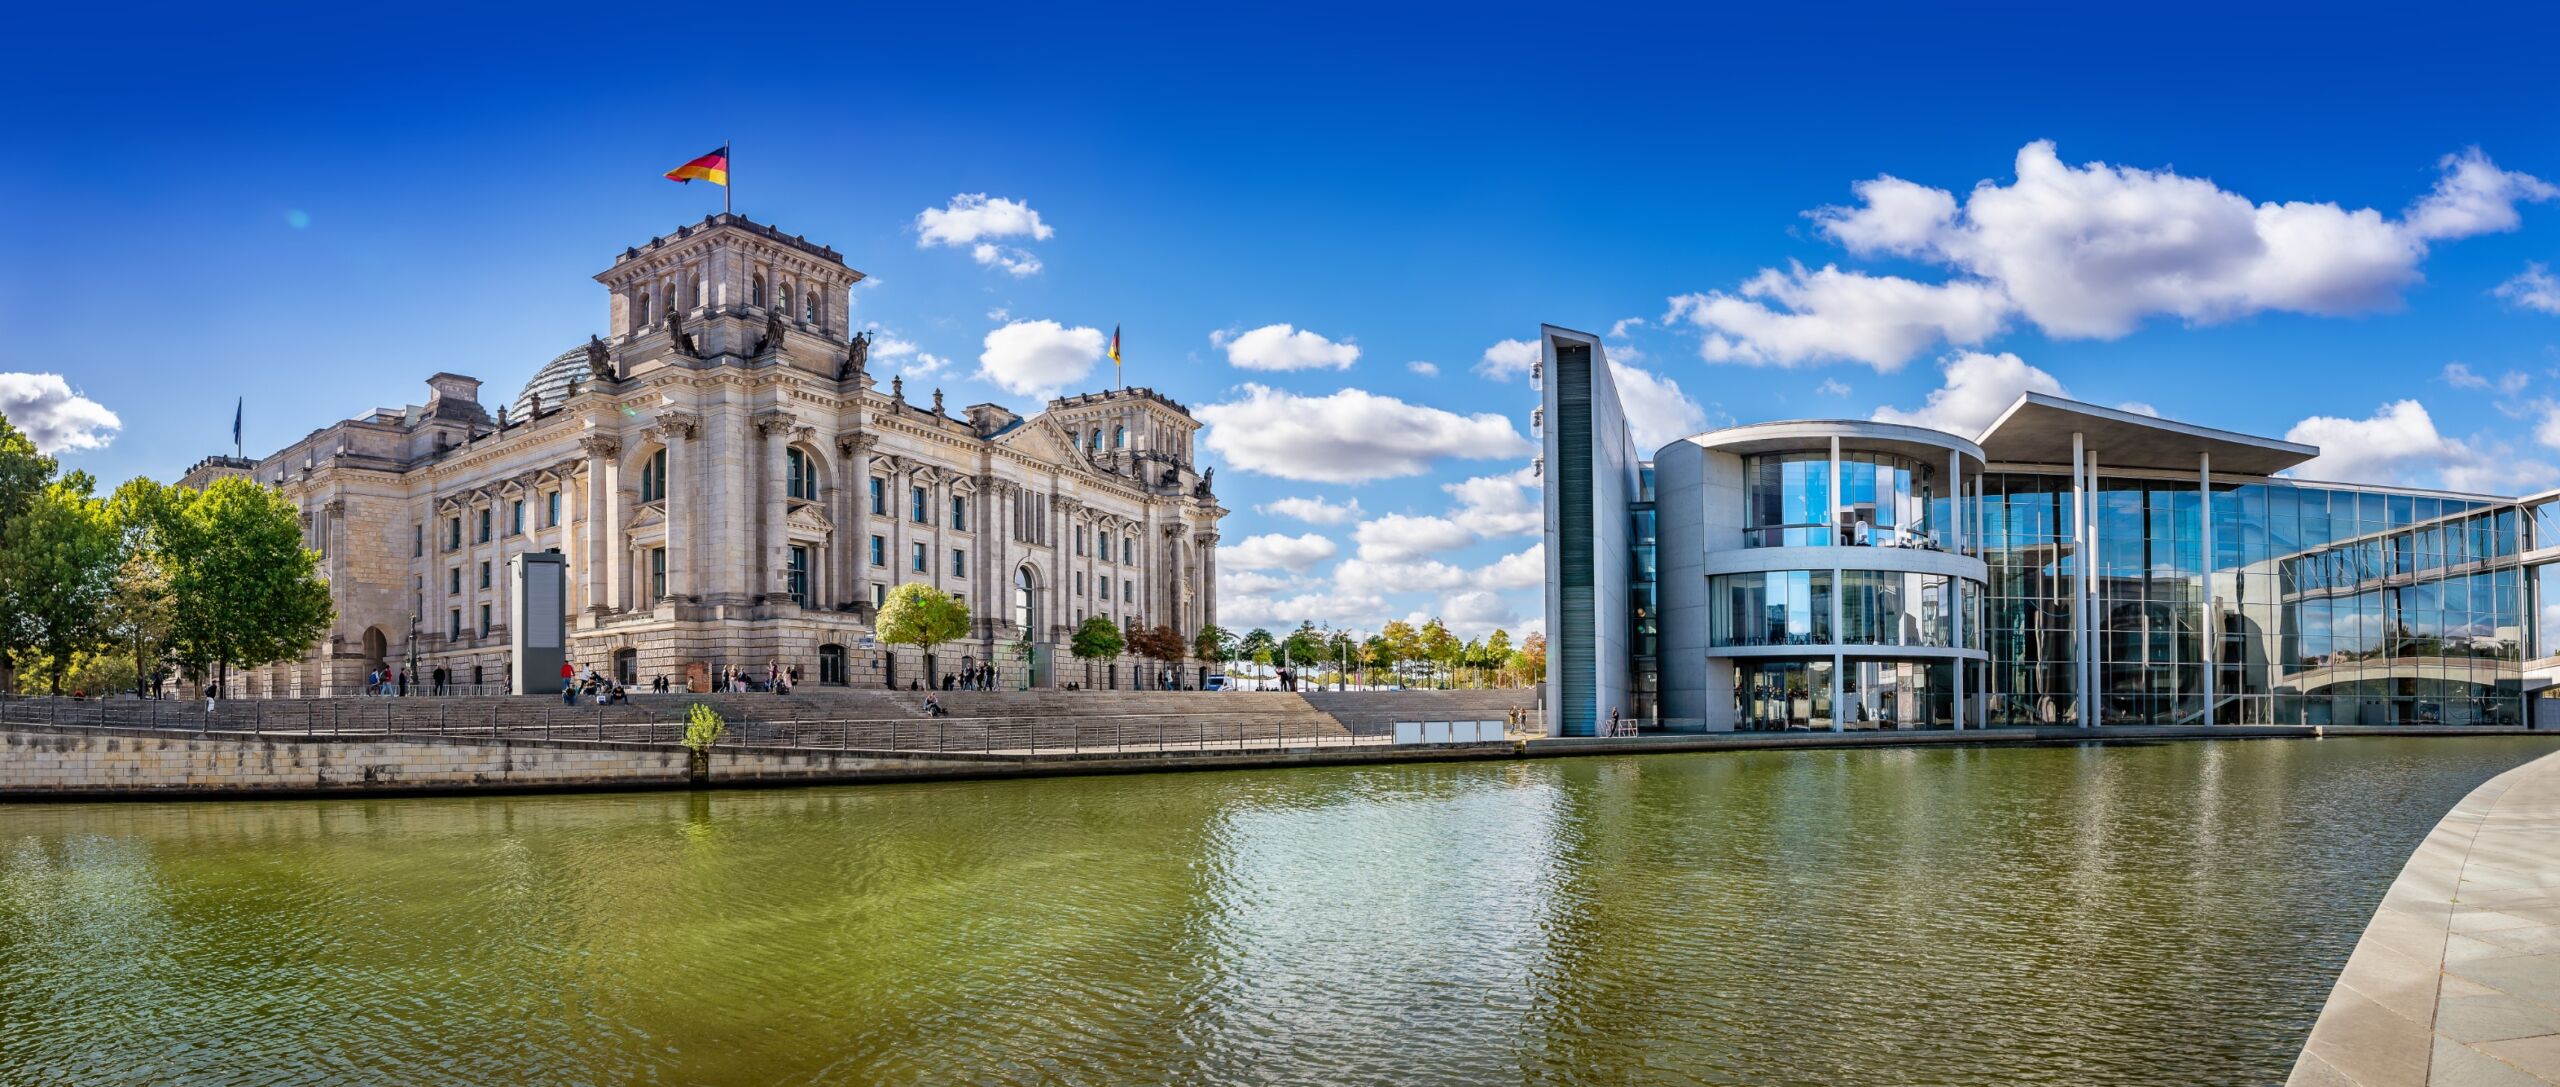 Panoramiczny widok na dzielnicę rządową w Berlinie